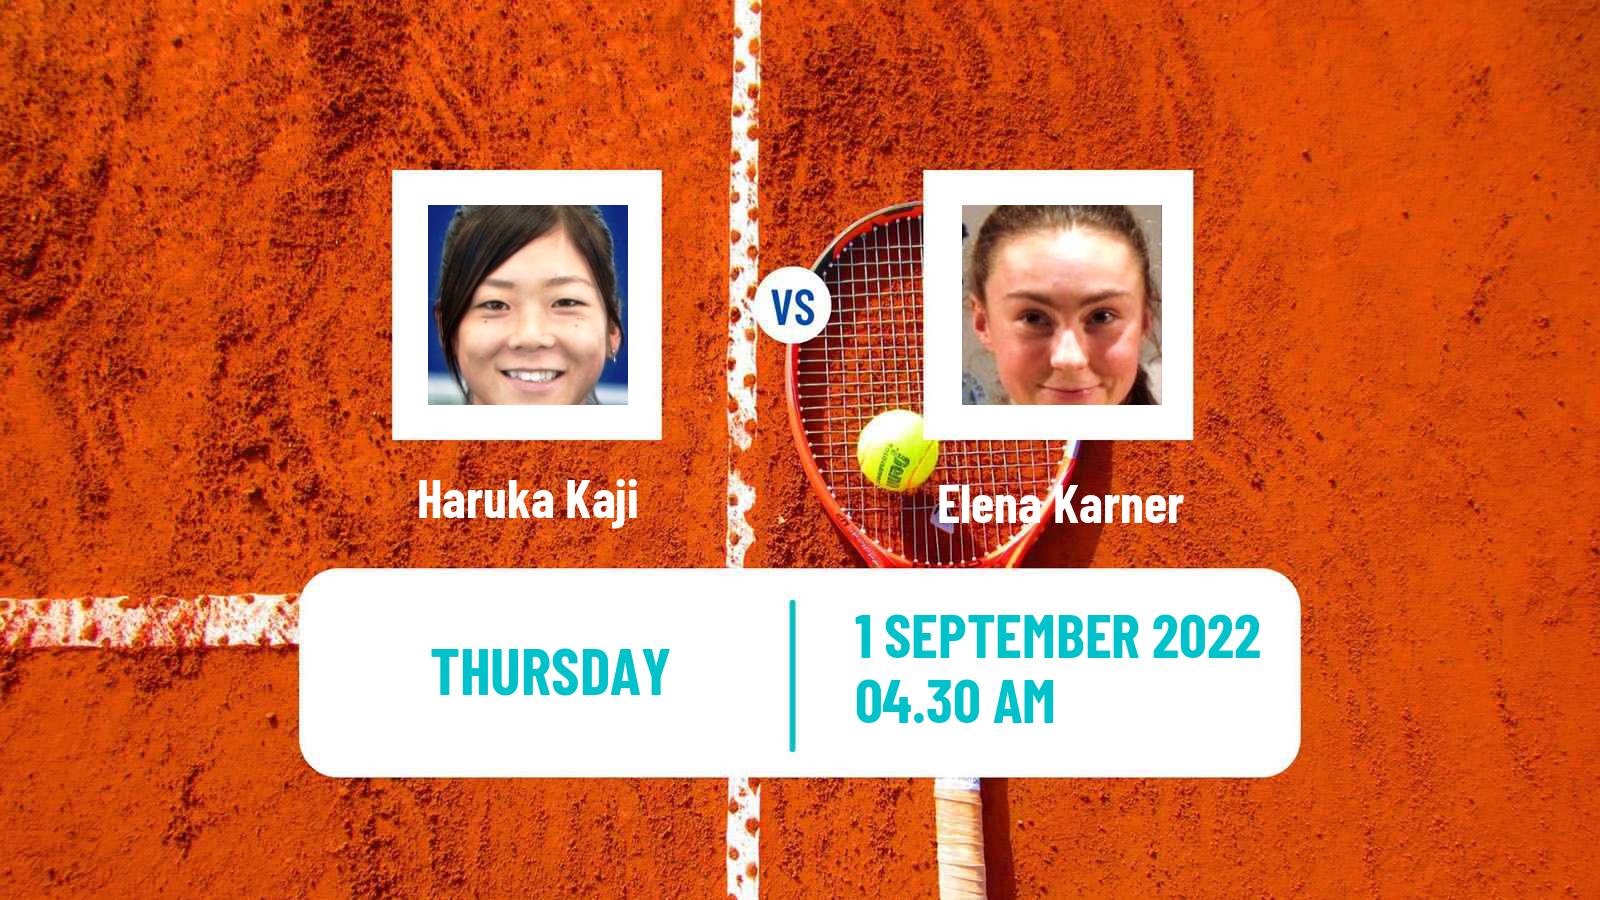 Tennis ITF Tournaments Haruka Kaji - Elena Karner